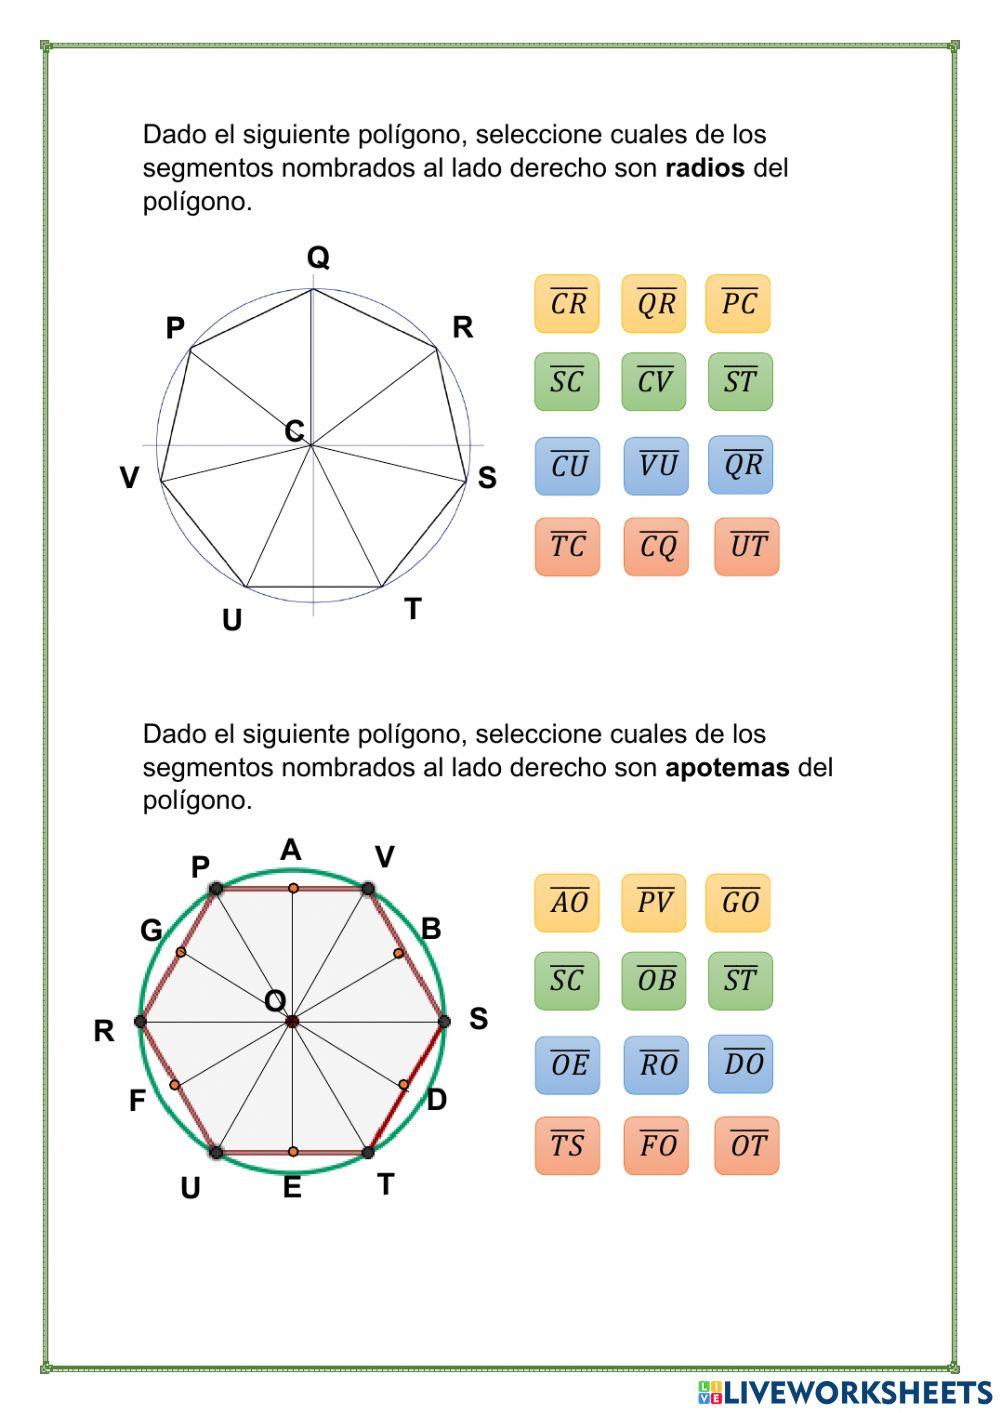 Polígonos regulares y sus elementos